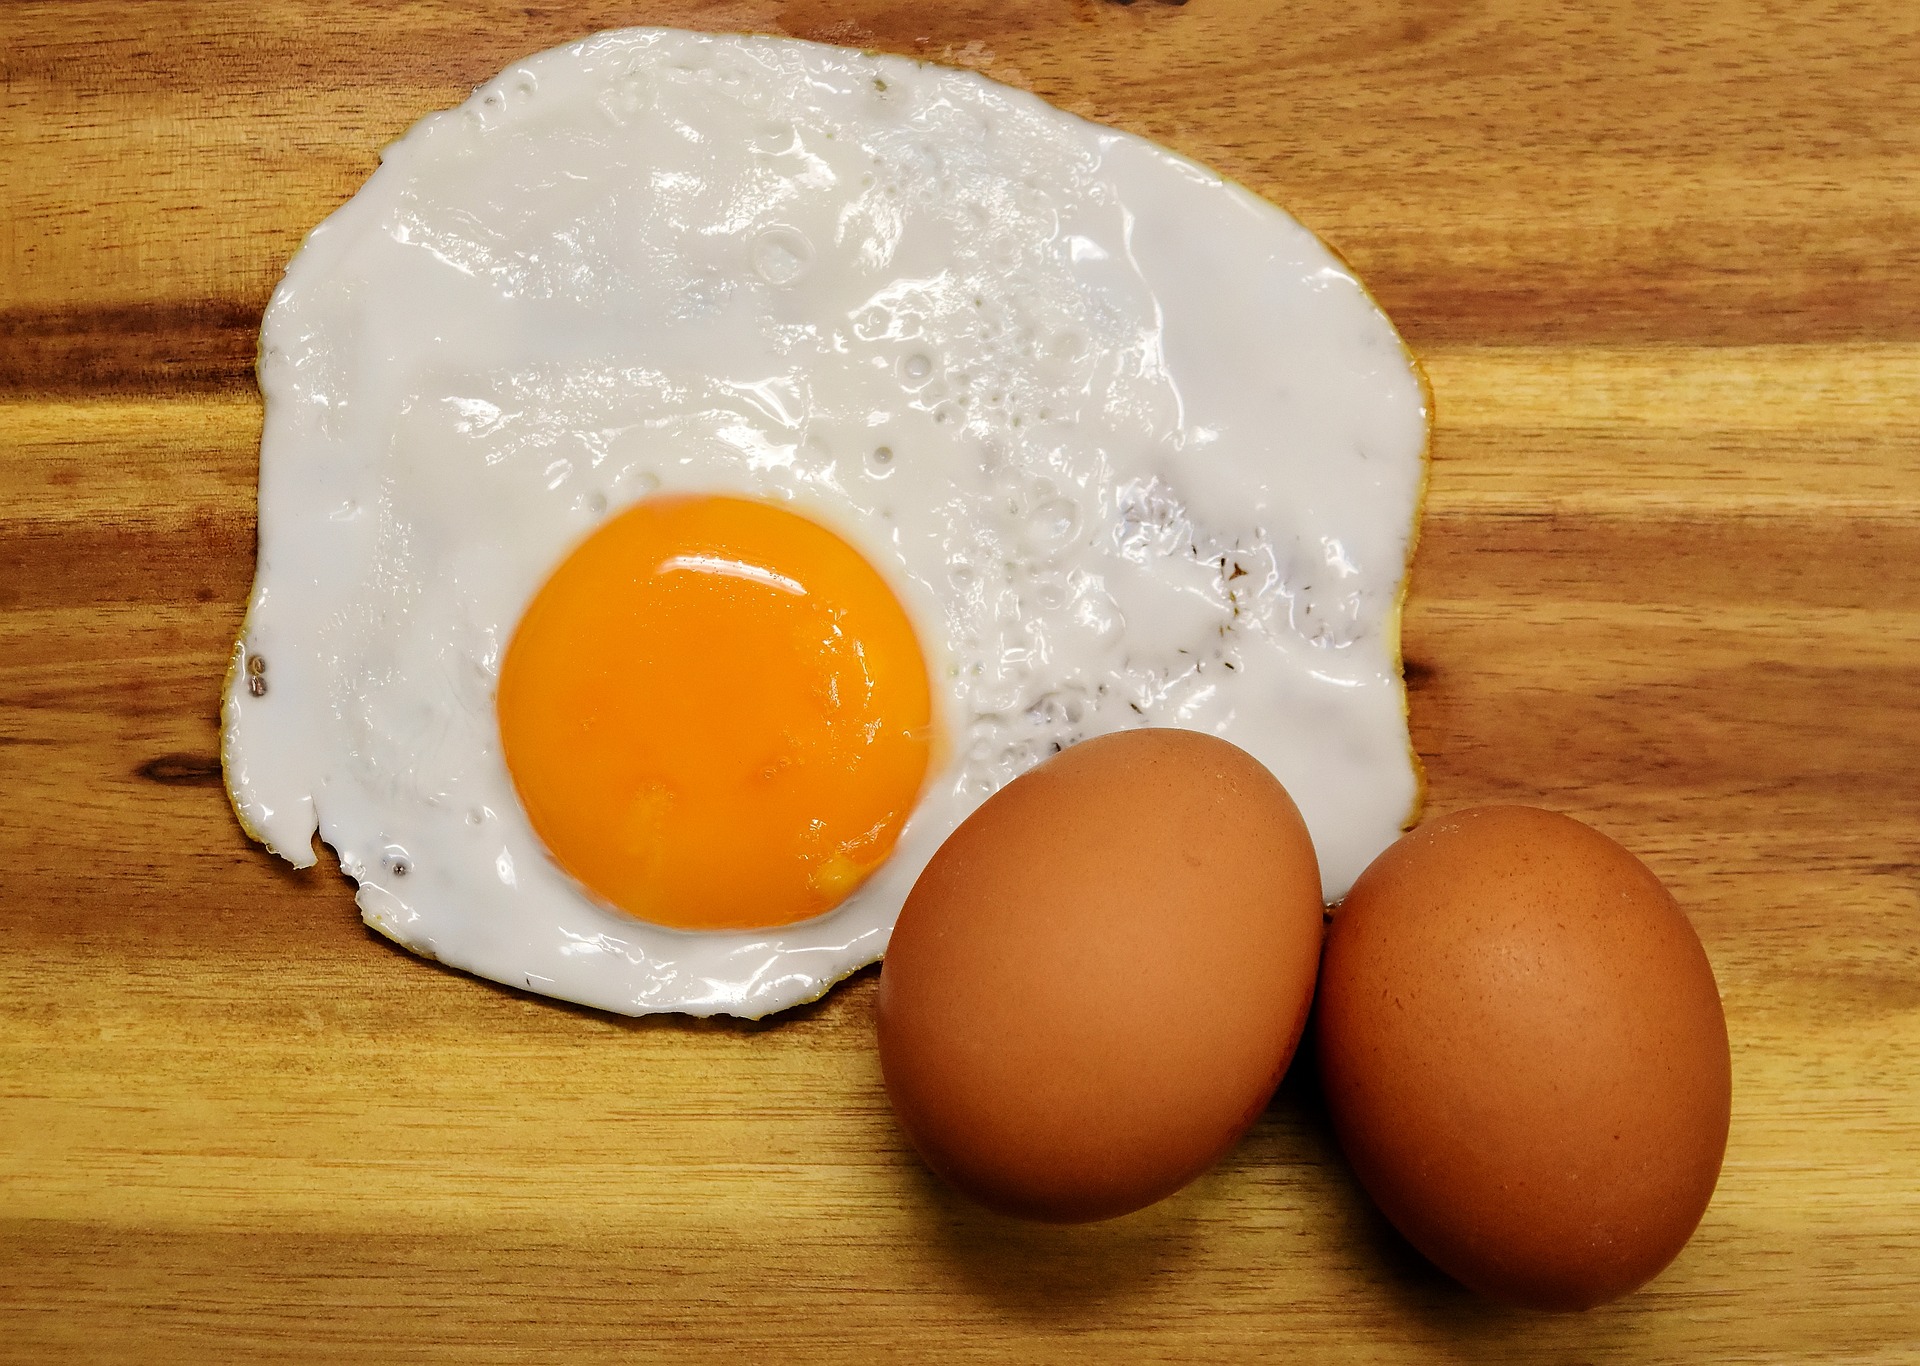 계란 2개와 계란을 깨서 후라이팬에 익힌 후라이 사진 - 소음인(少陰人)에게 맞는 음식